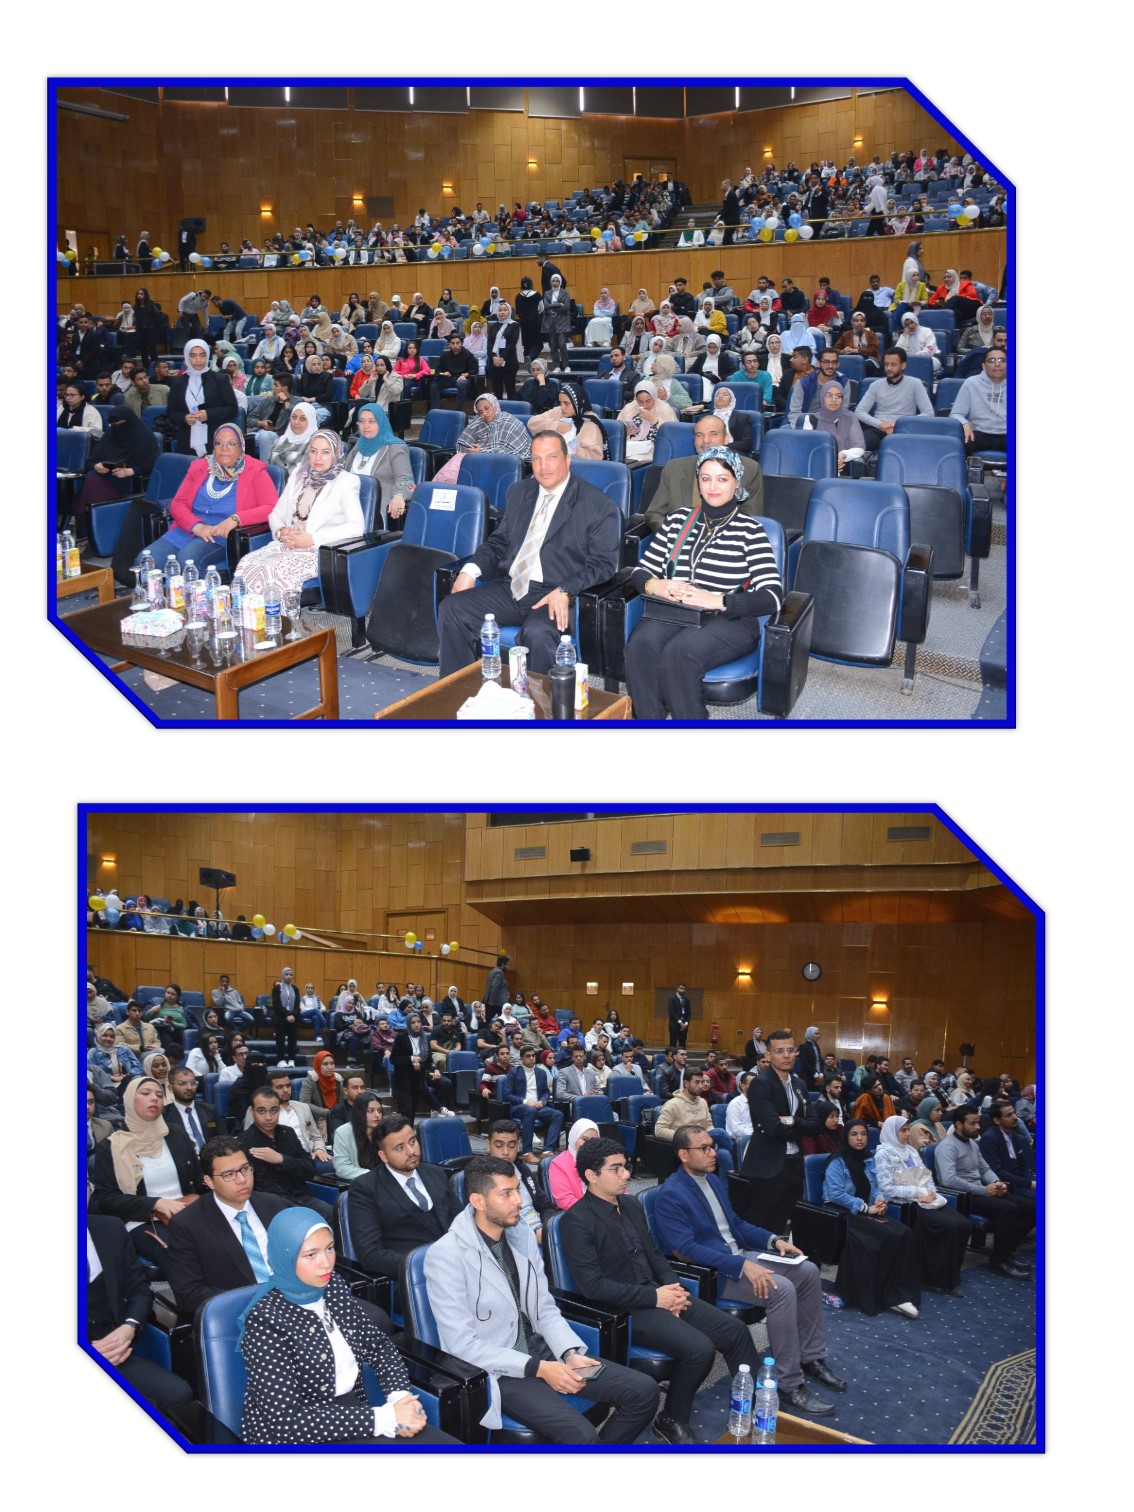 صور المؤتمر العلمى الثالث والعشرون للإتحاد المصرى لطلاب كلية الصيدلة - بجامعة أسيوط